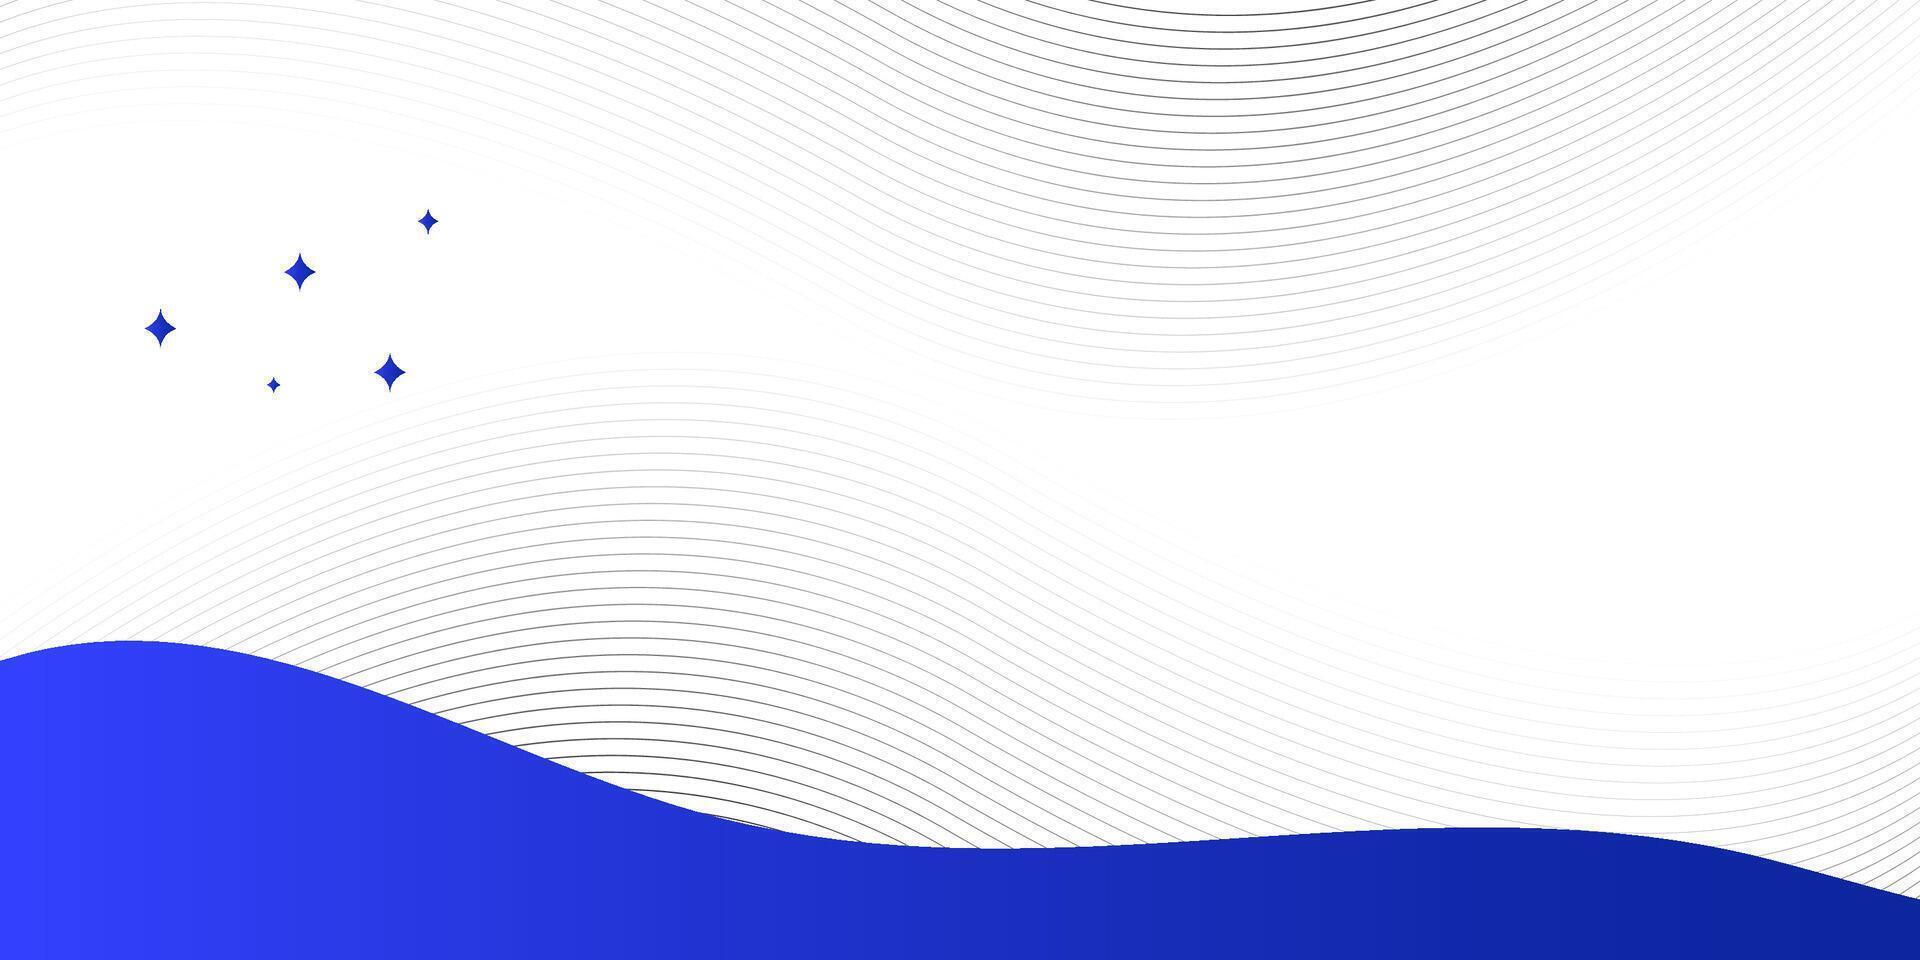 Blau abstrakt Hintergrund mit Welle. ziehen um Linien Design Element. vektor